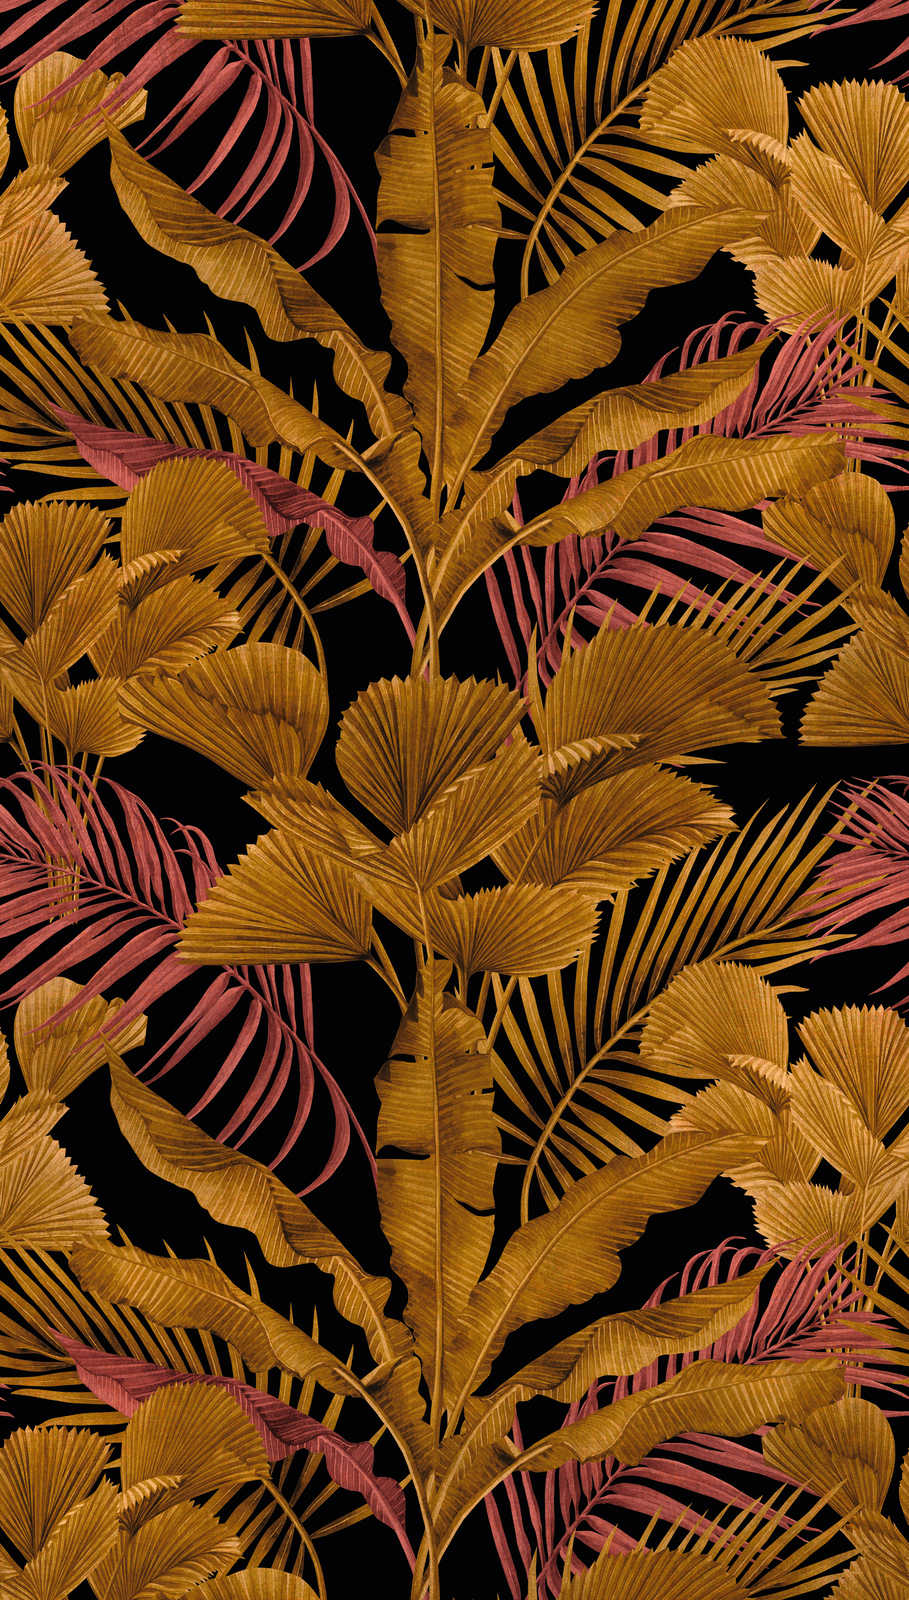             Papier peint intissé avec différentes feuilles de la jungle - noir, or, rose
        